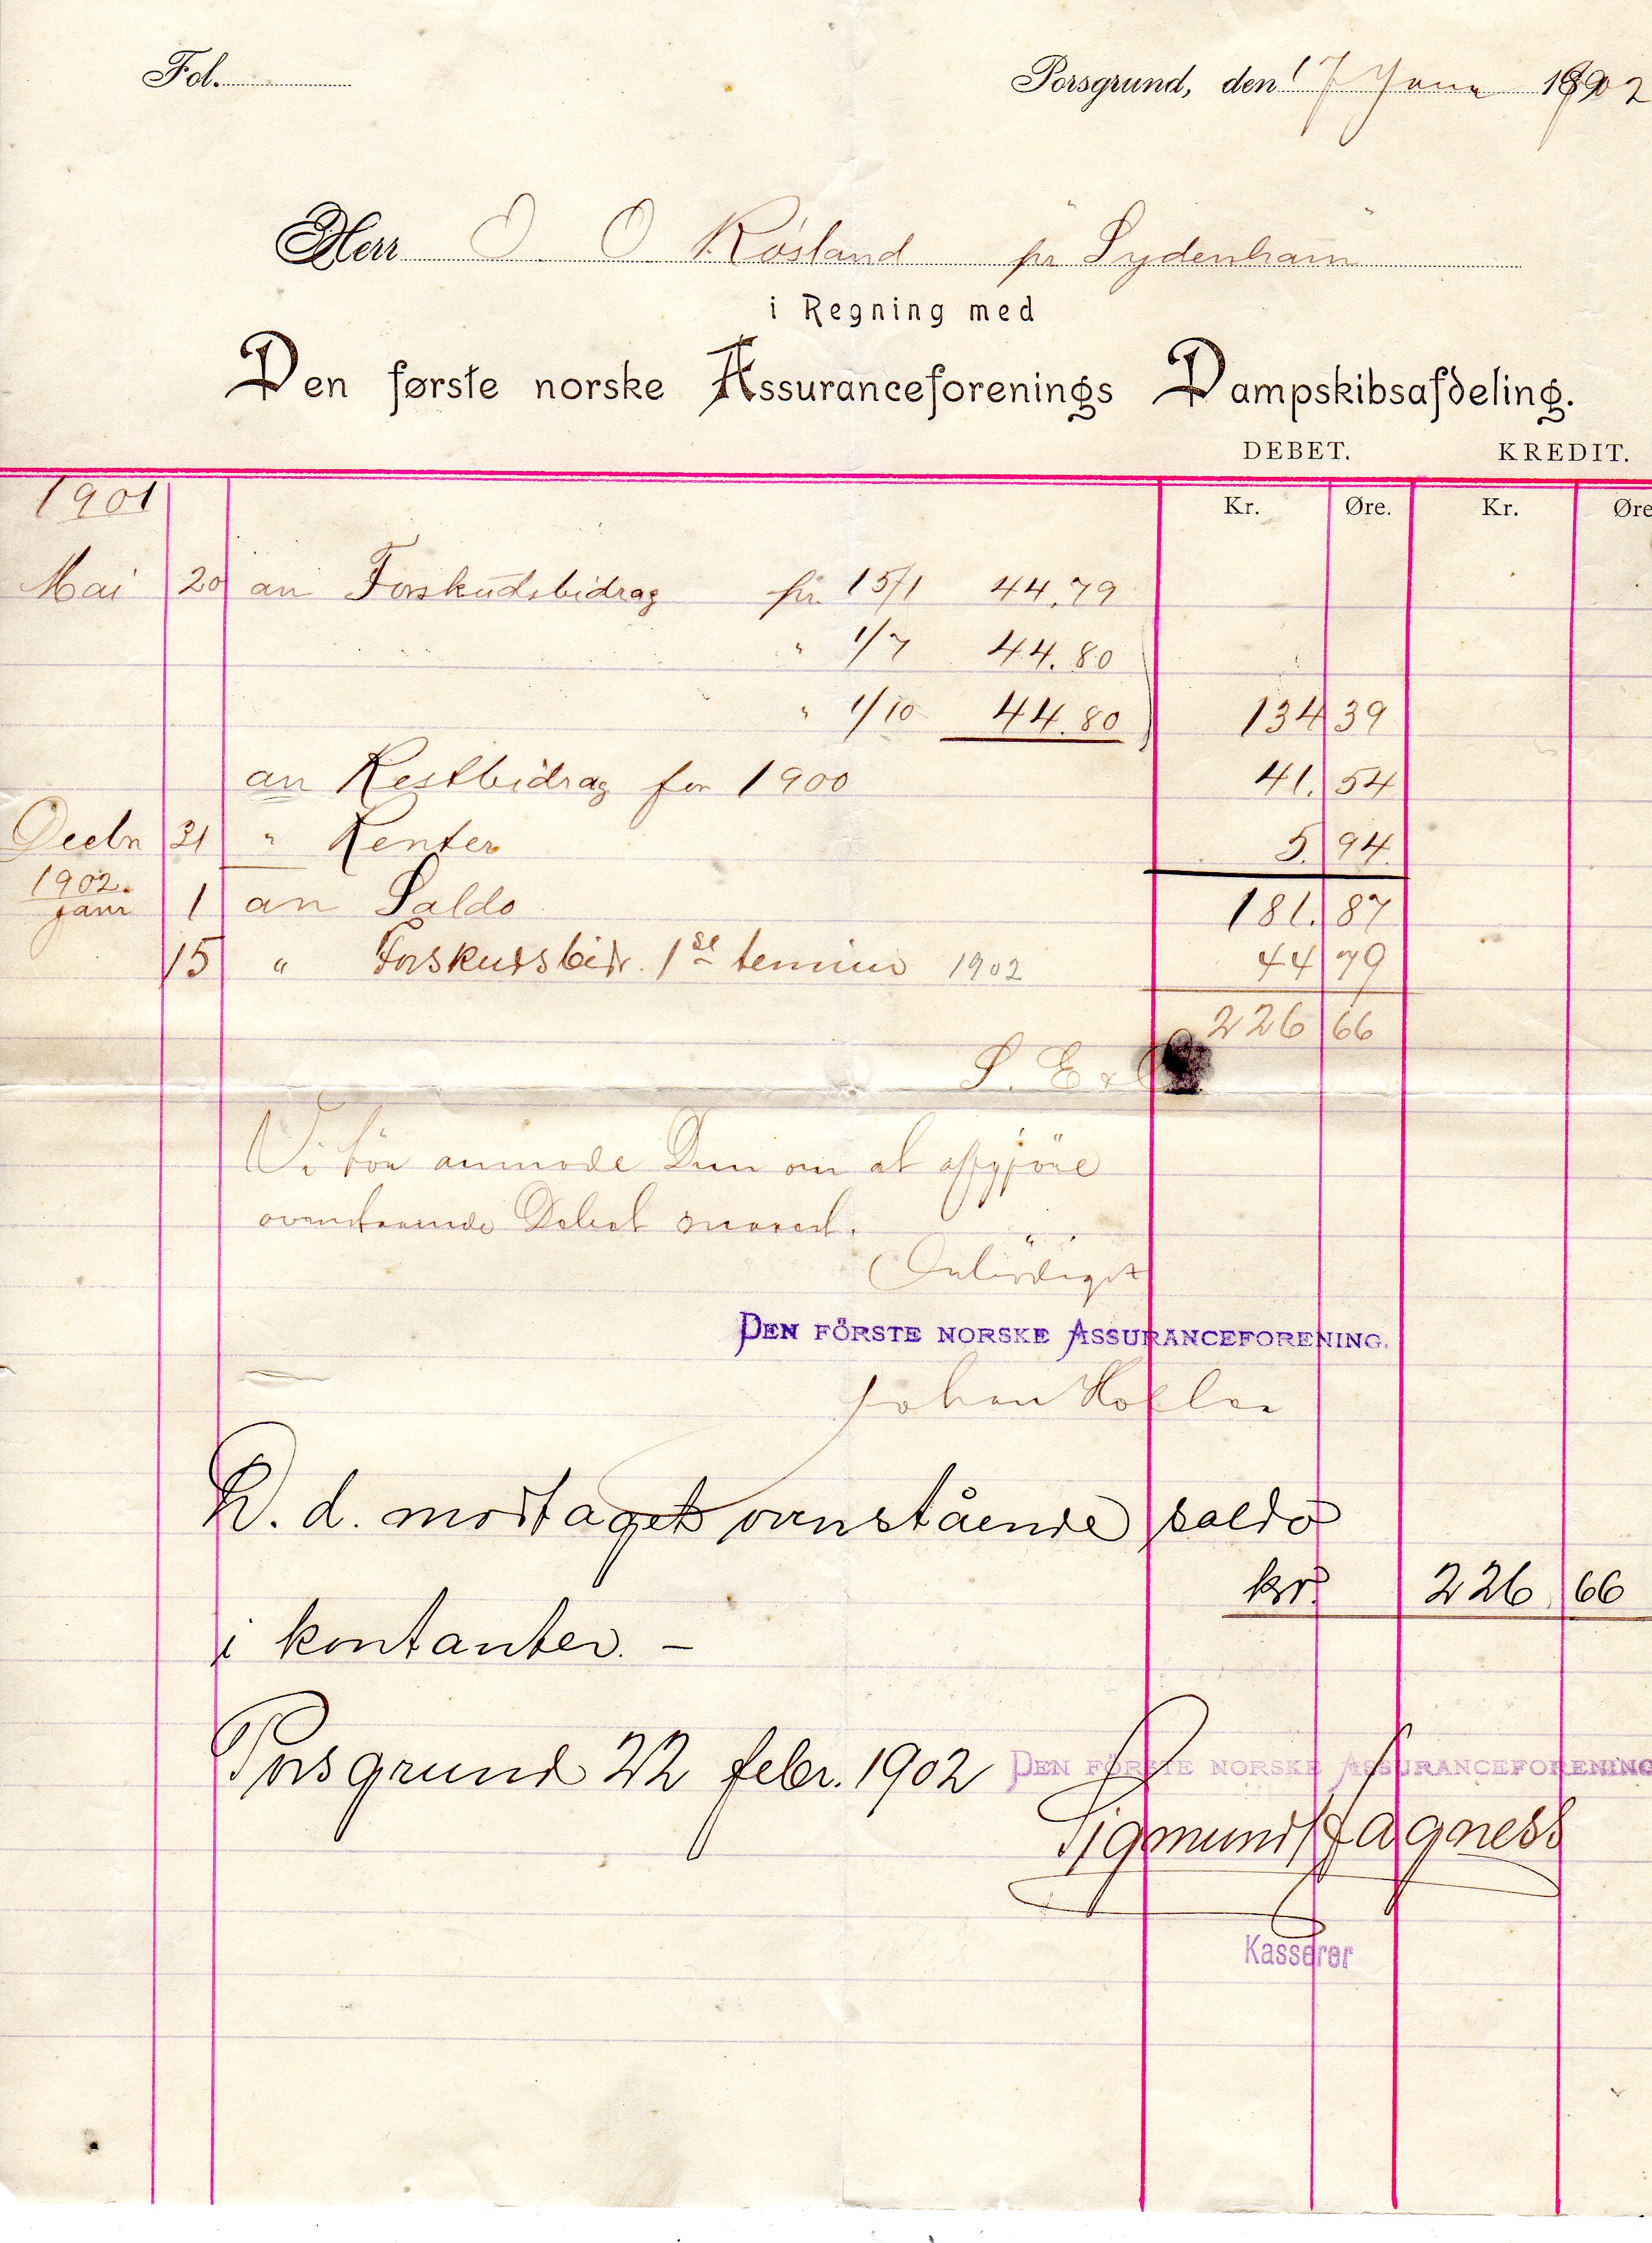 Den første norske assuransforening 1902/1903 pr stk 75kr